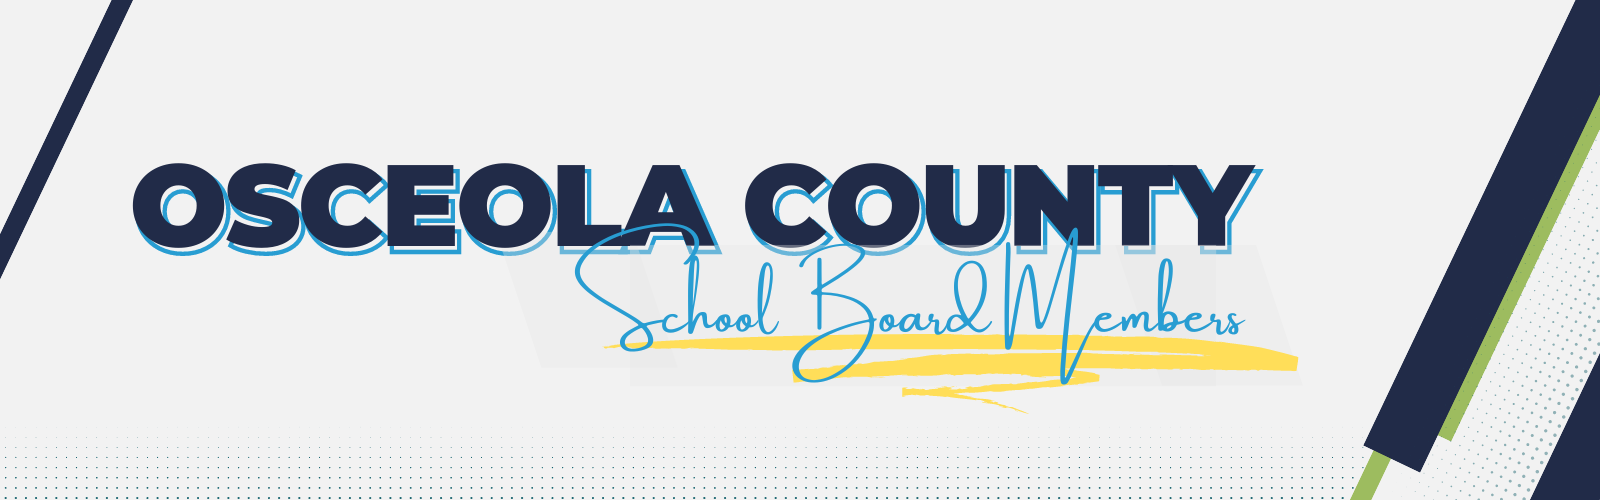 Osceola County School Board Members Banner